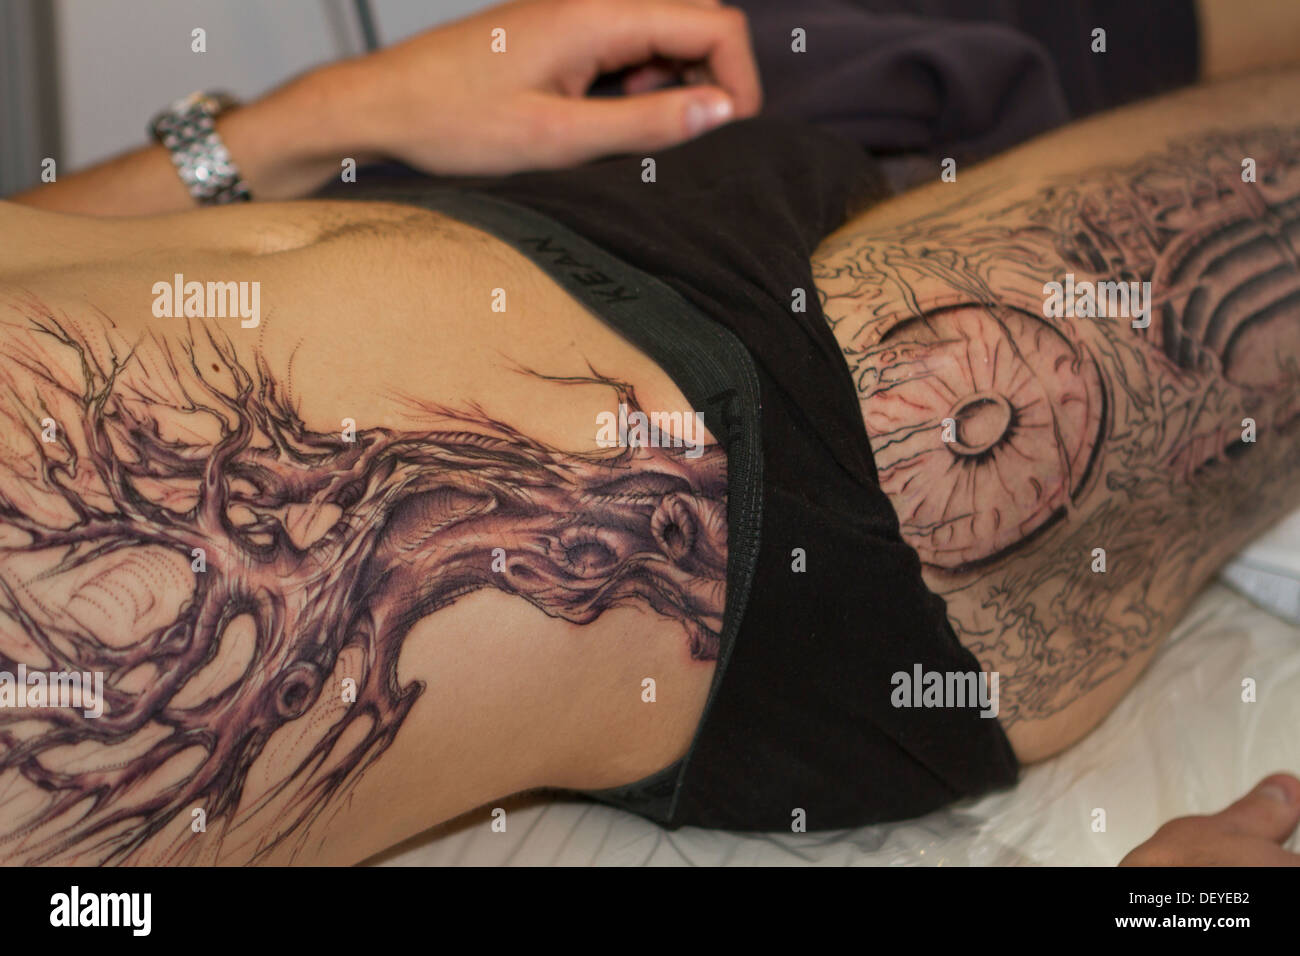 La création d'un nouveau tatouage lors de la Convention de Tatouage 2013 à Katowice, Pologne. Banque D'Images